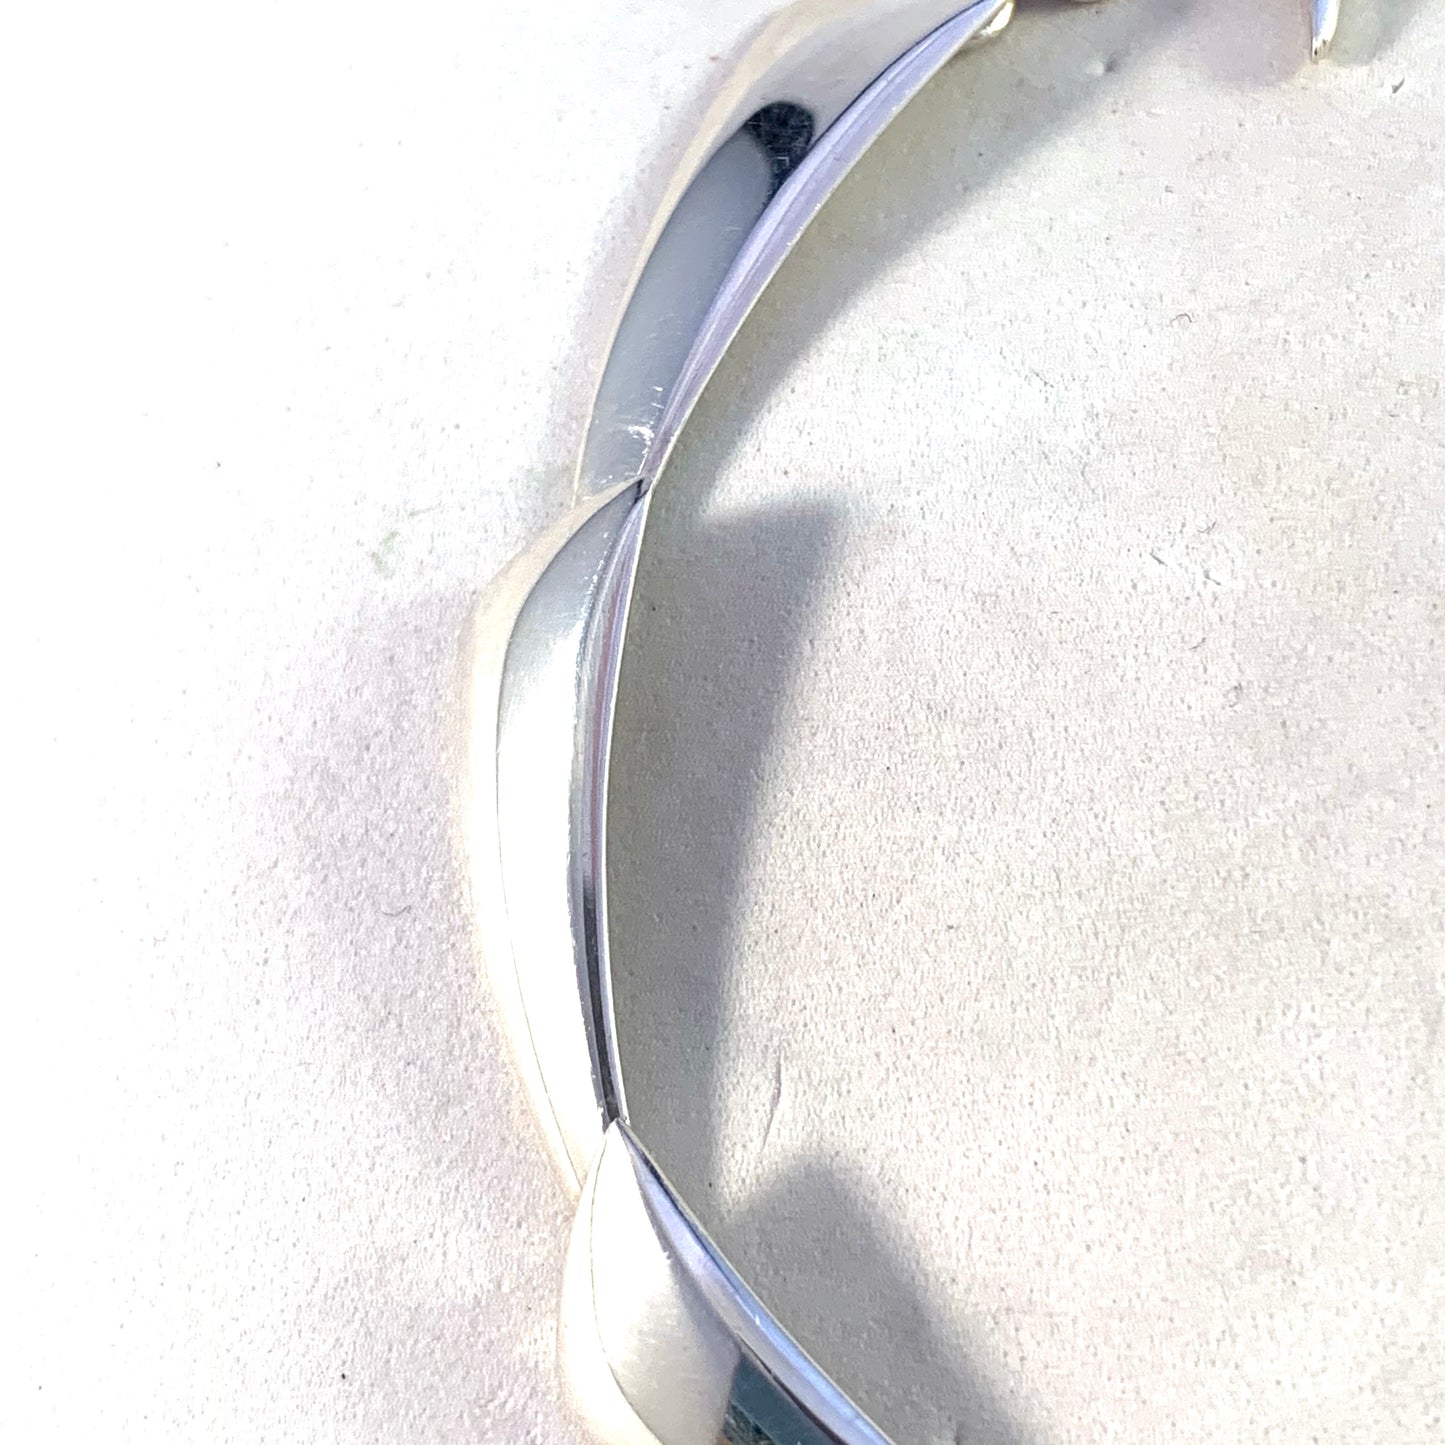 Hermann Siersbol, Denmark 1960s Modernist Sterling Silver Link Bracelet.